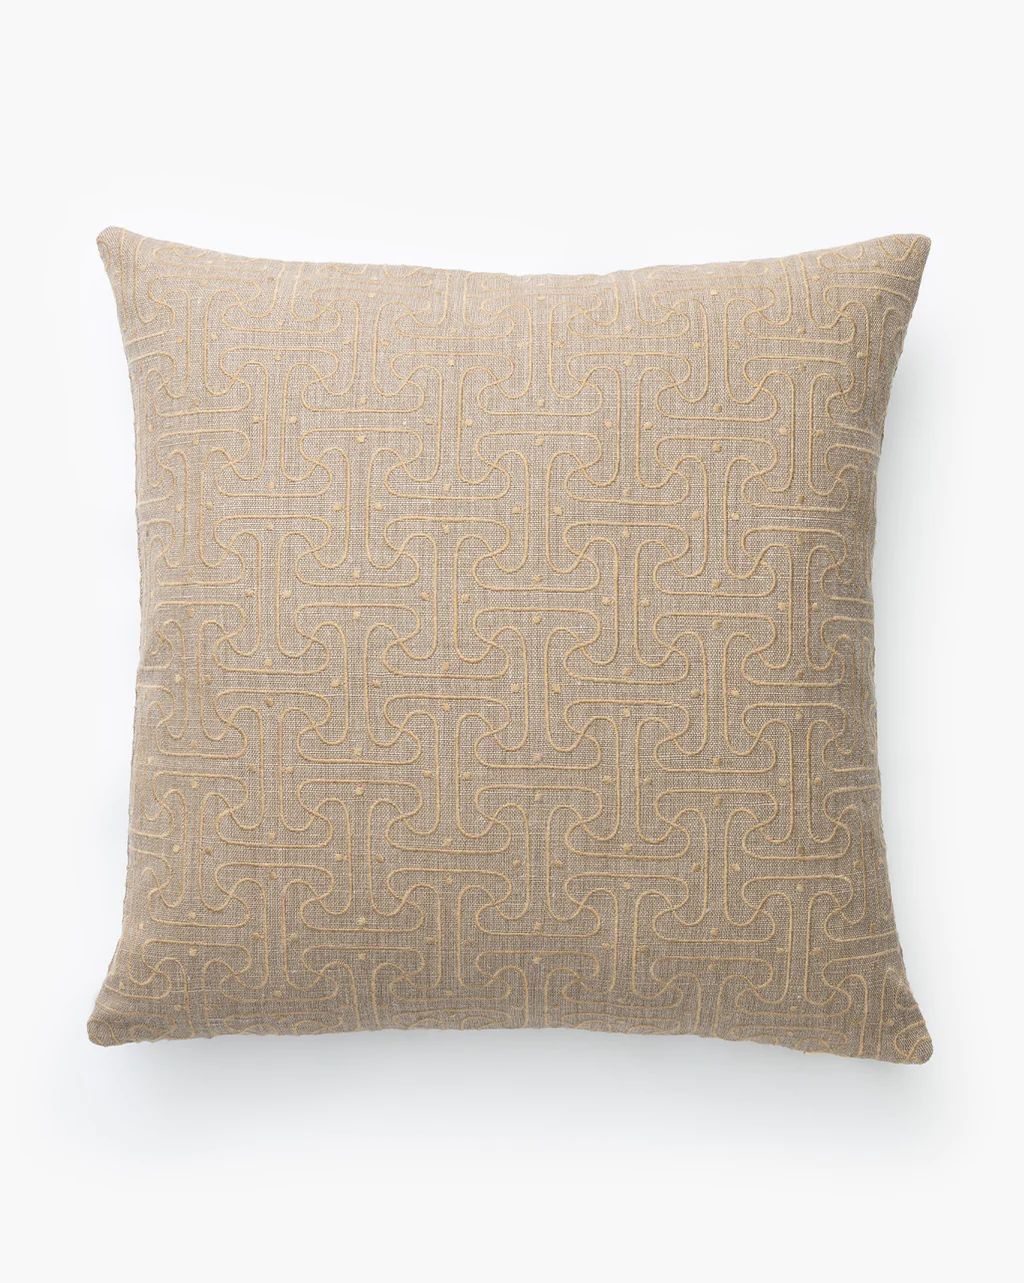 Saren Pillow Cover | McGee & Co.